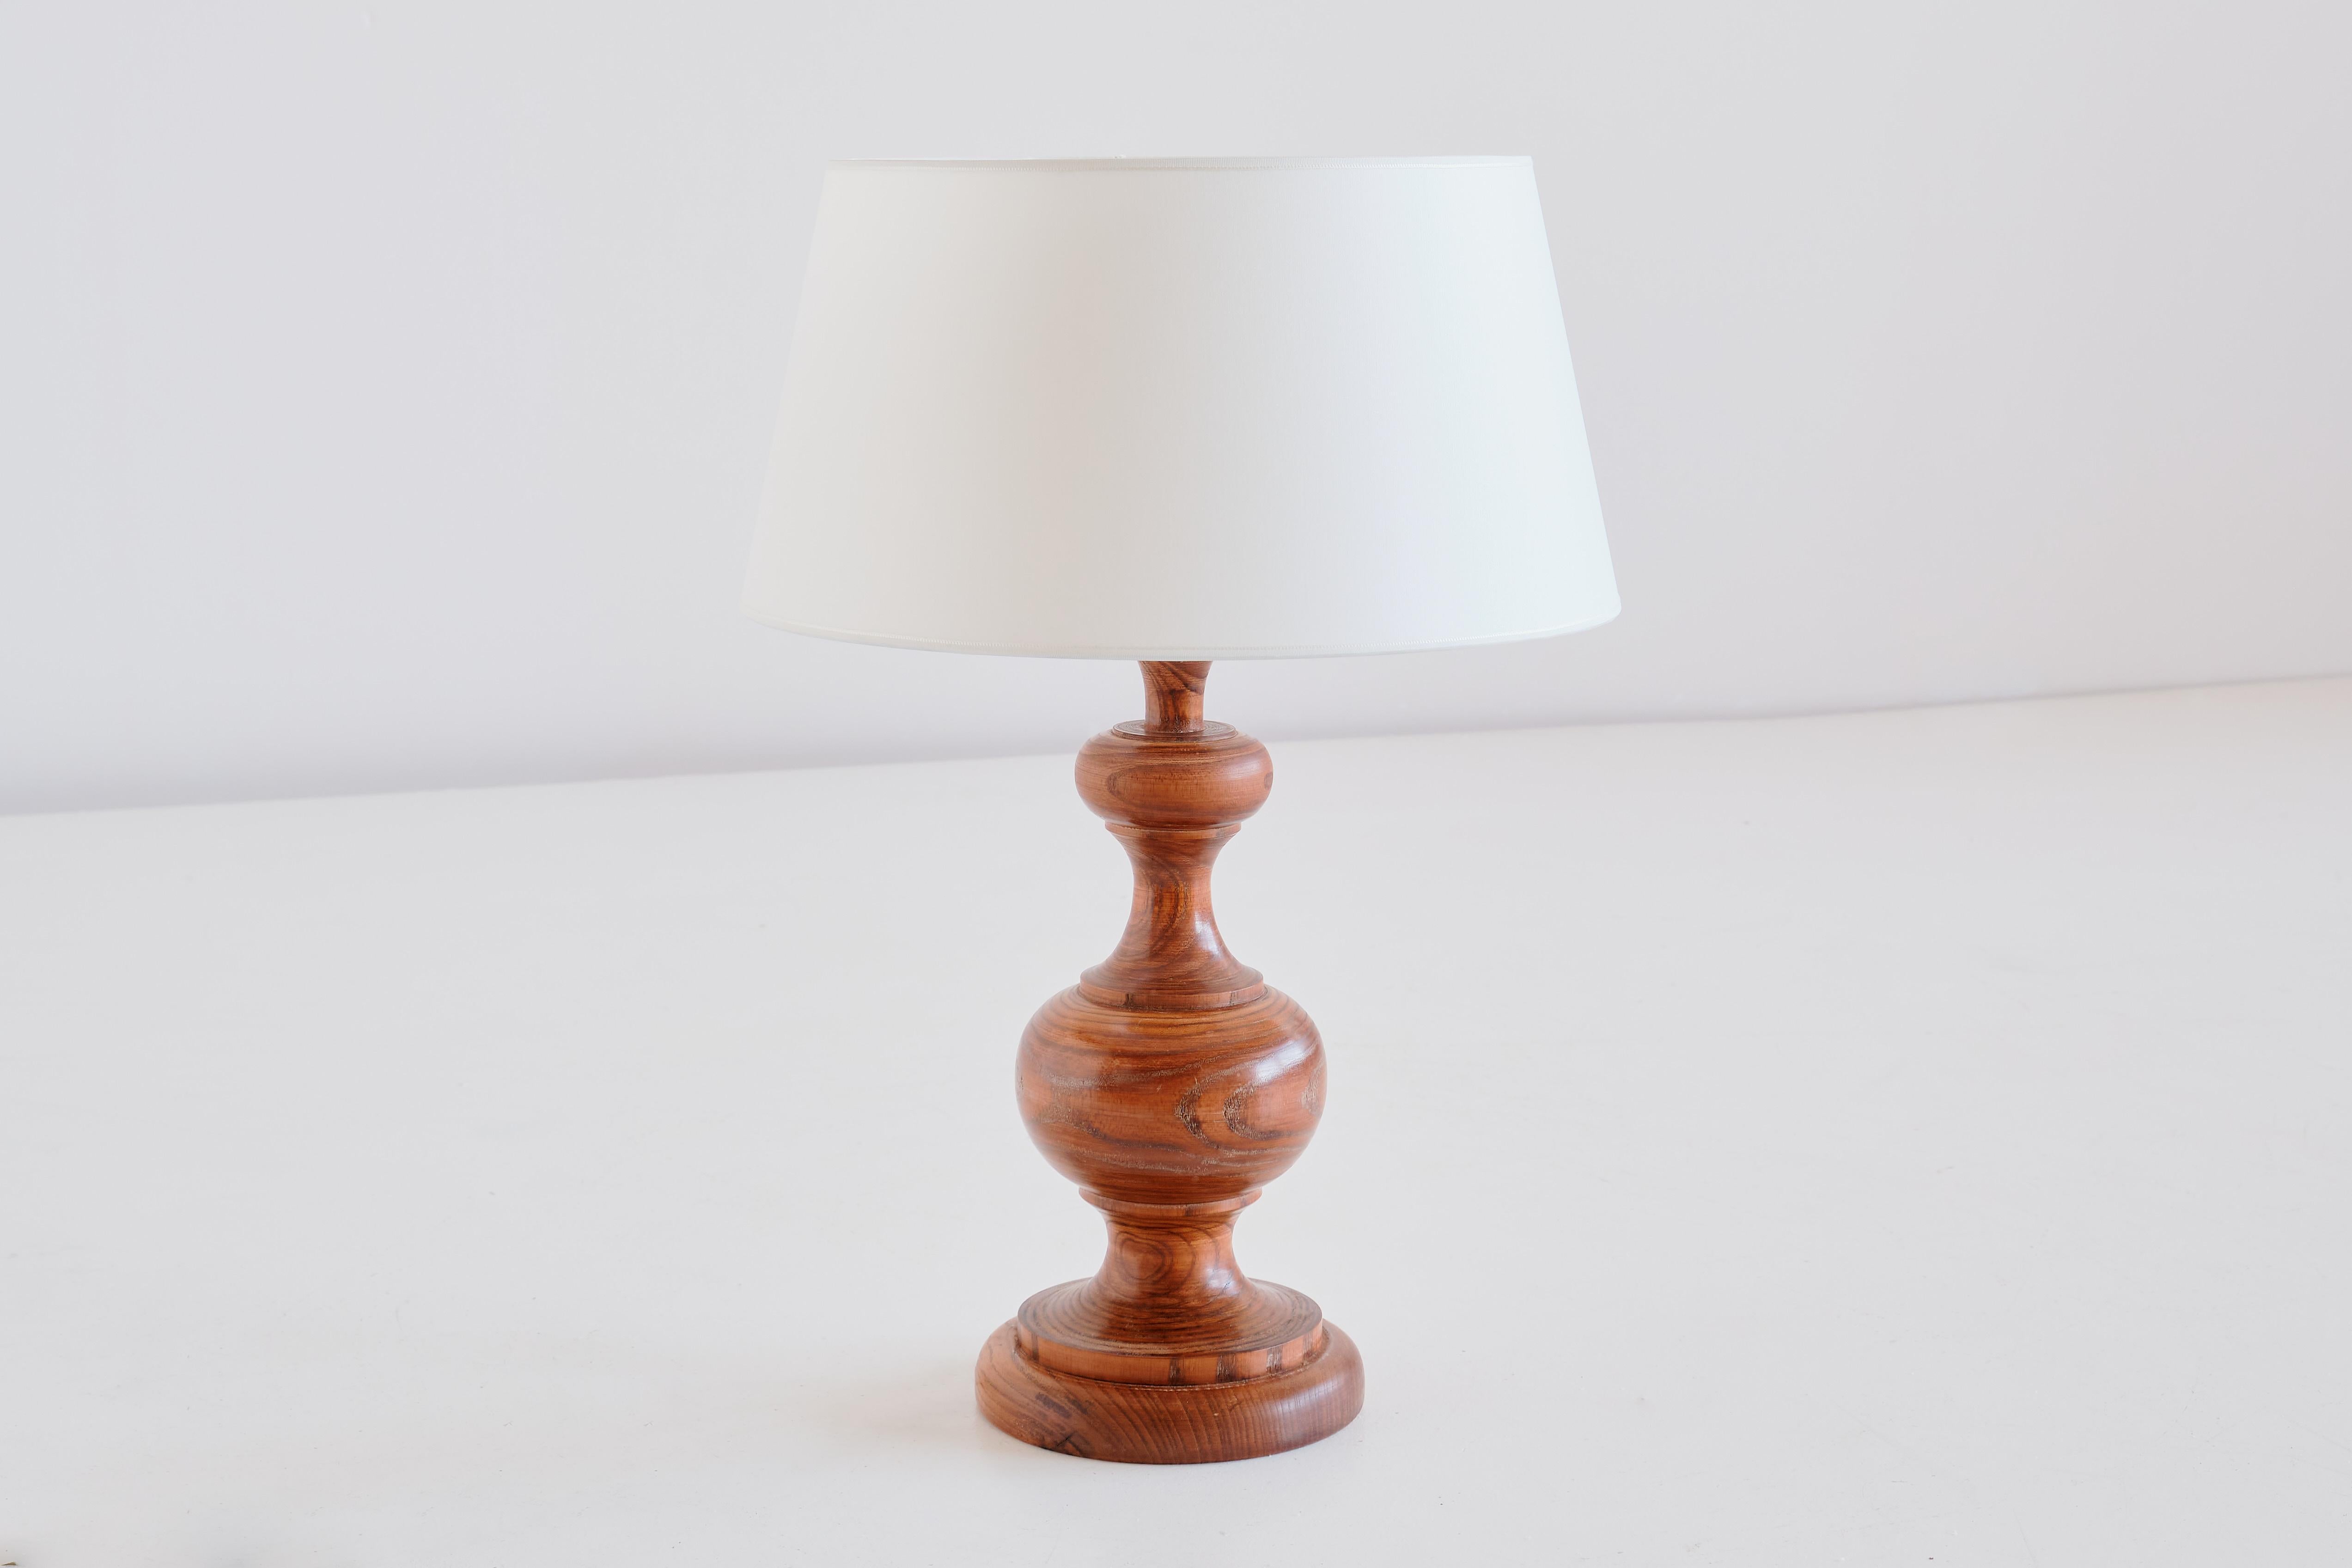 Diese rustikale und elegante Tischleuchte wurde in den 1950er Jahren in Frankreich hergestellt. Die Lampe ist aus massivem Eichenholz gefertigt und weist eine auffällige Holzmaserung auf. Der neue elfenbeinfarbene Schirm in spitz zulaufender